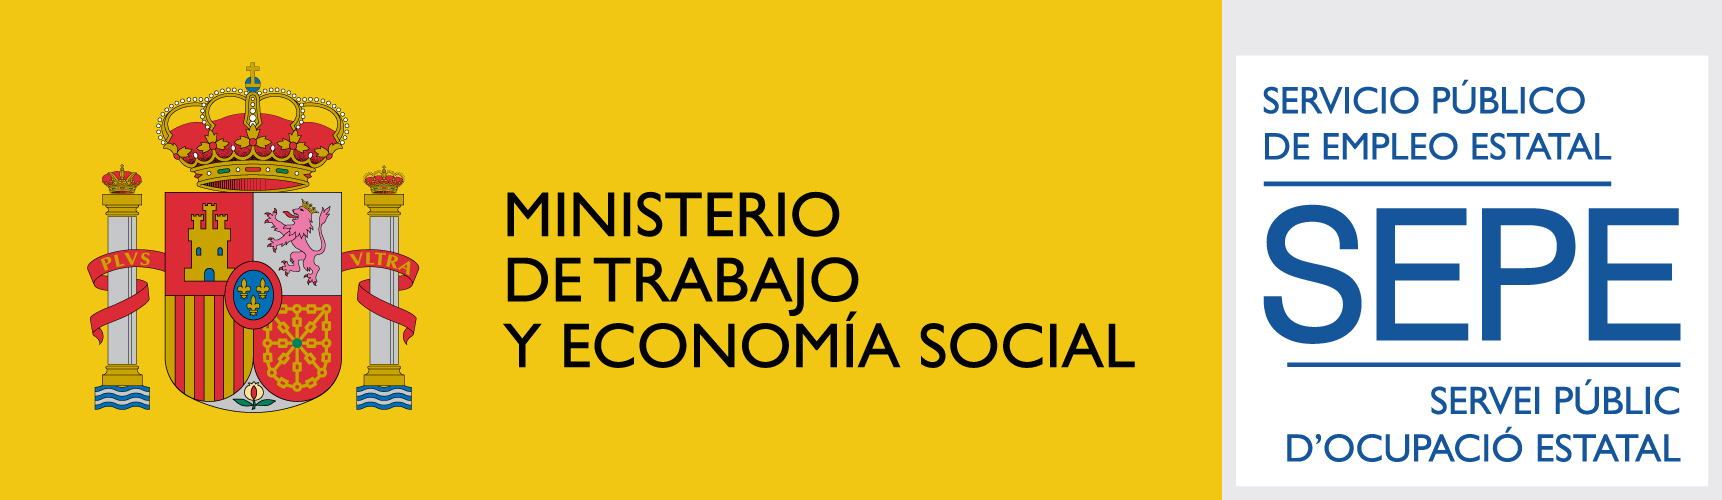 Ministerio de trabajo y economía social - SEPE - Servicio de empleo público estatal